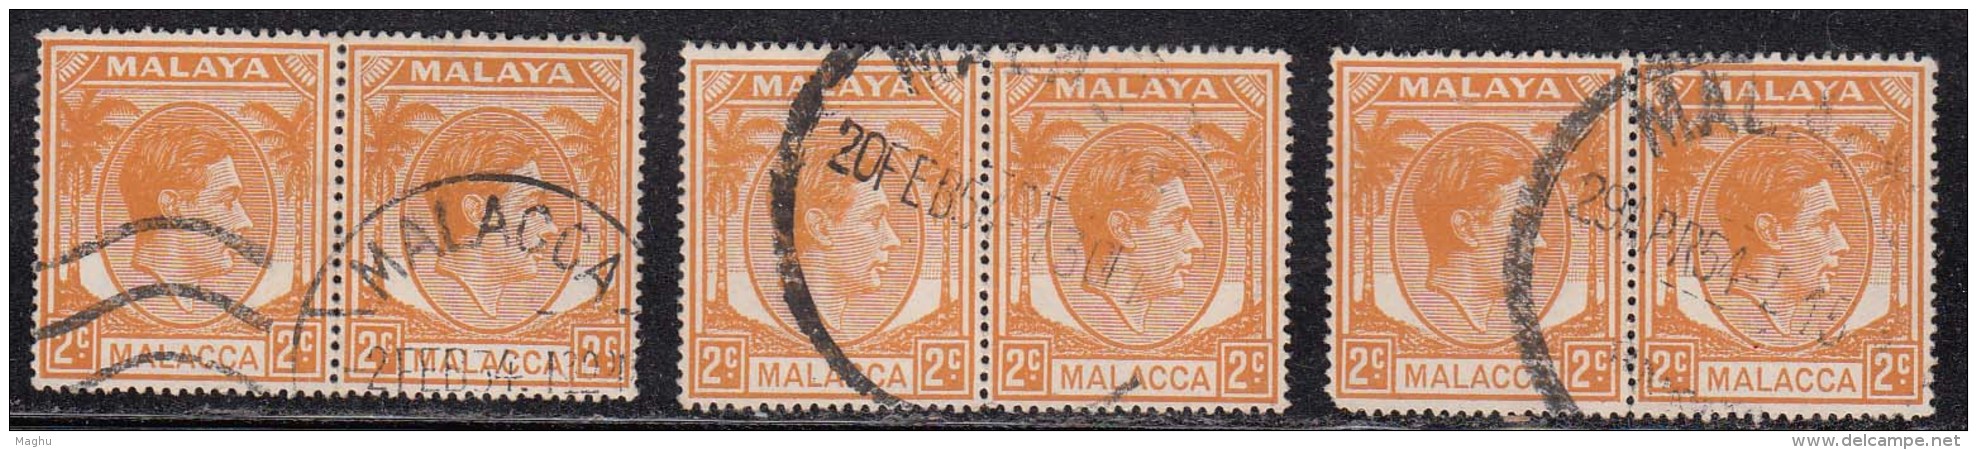 2c Pairs X 3 Malacca  Used 1941, KG VI 1949,  Malaya - Malacca